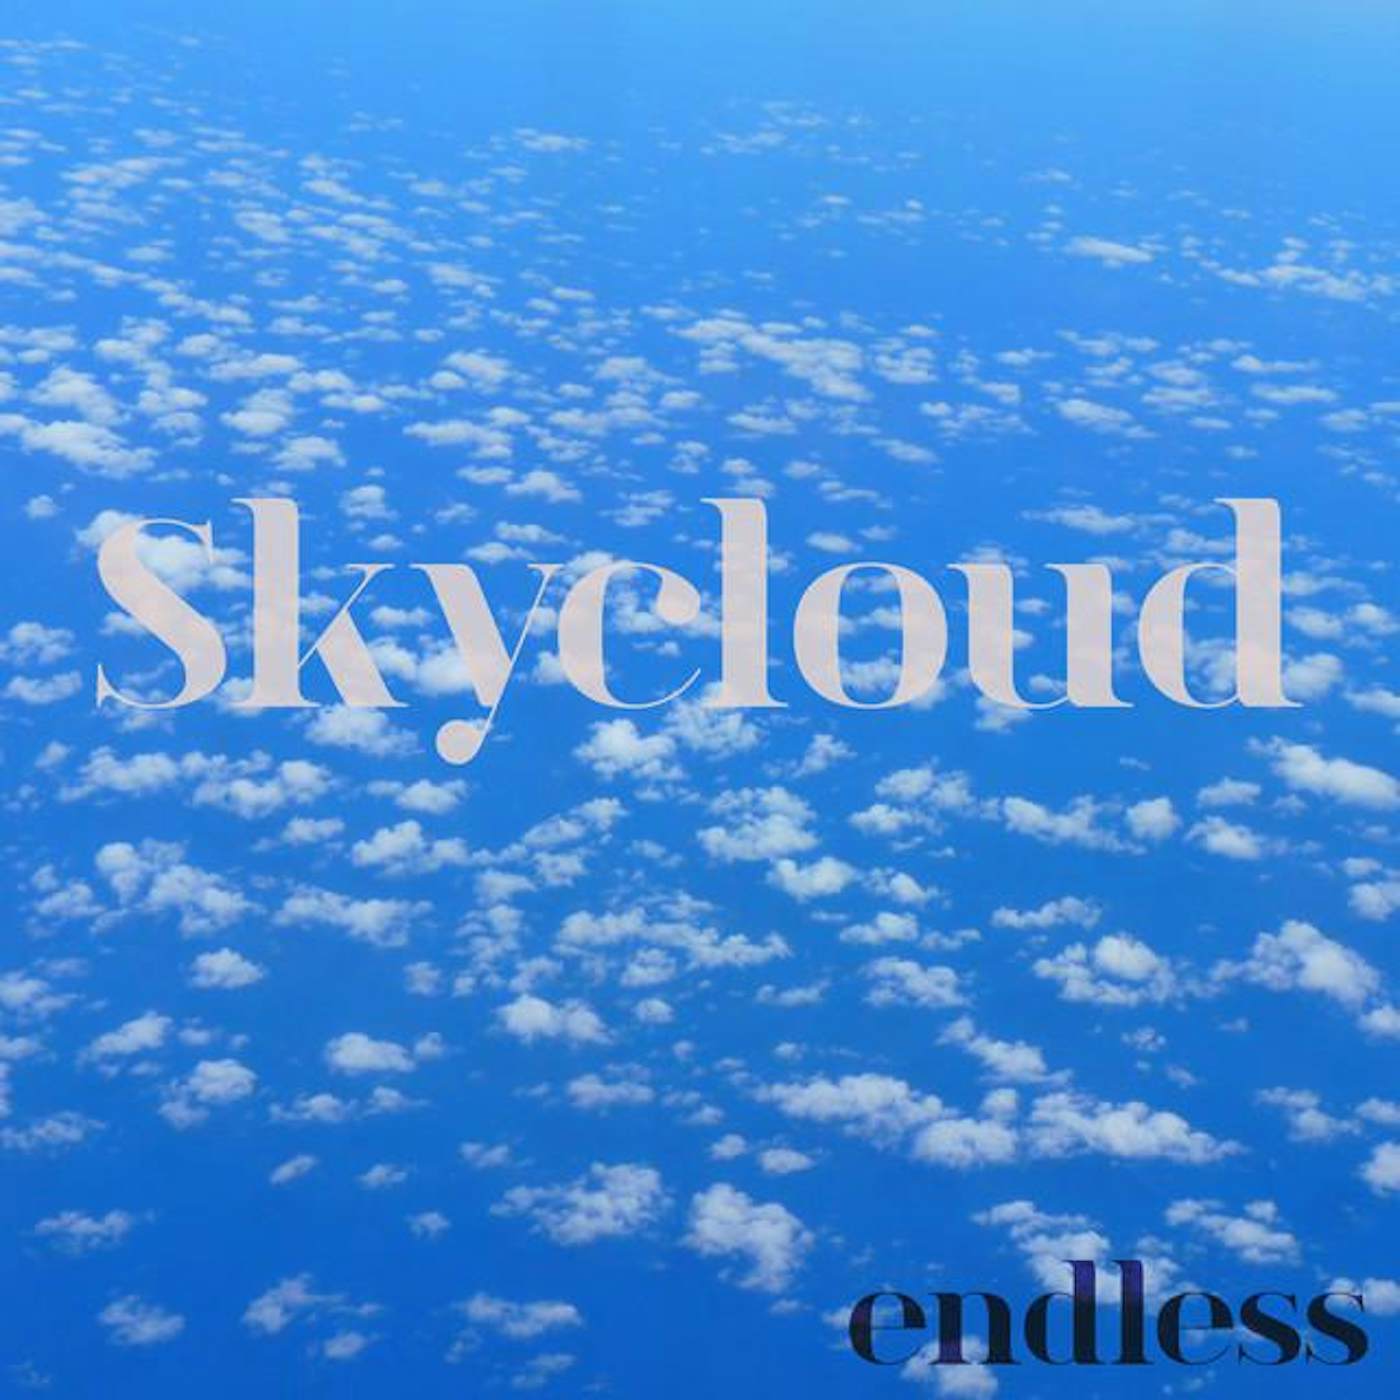 Skycloud